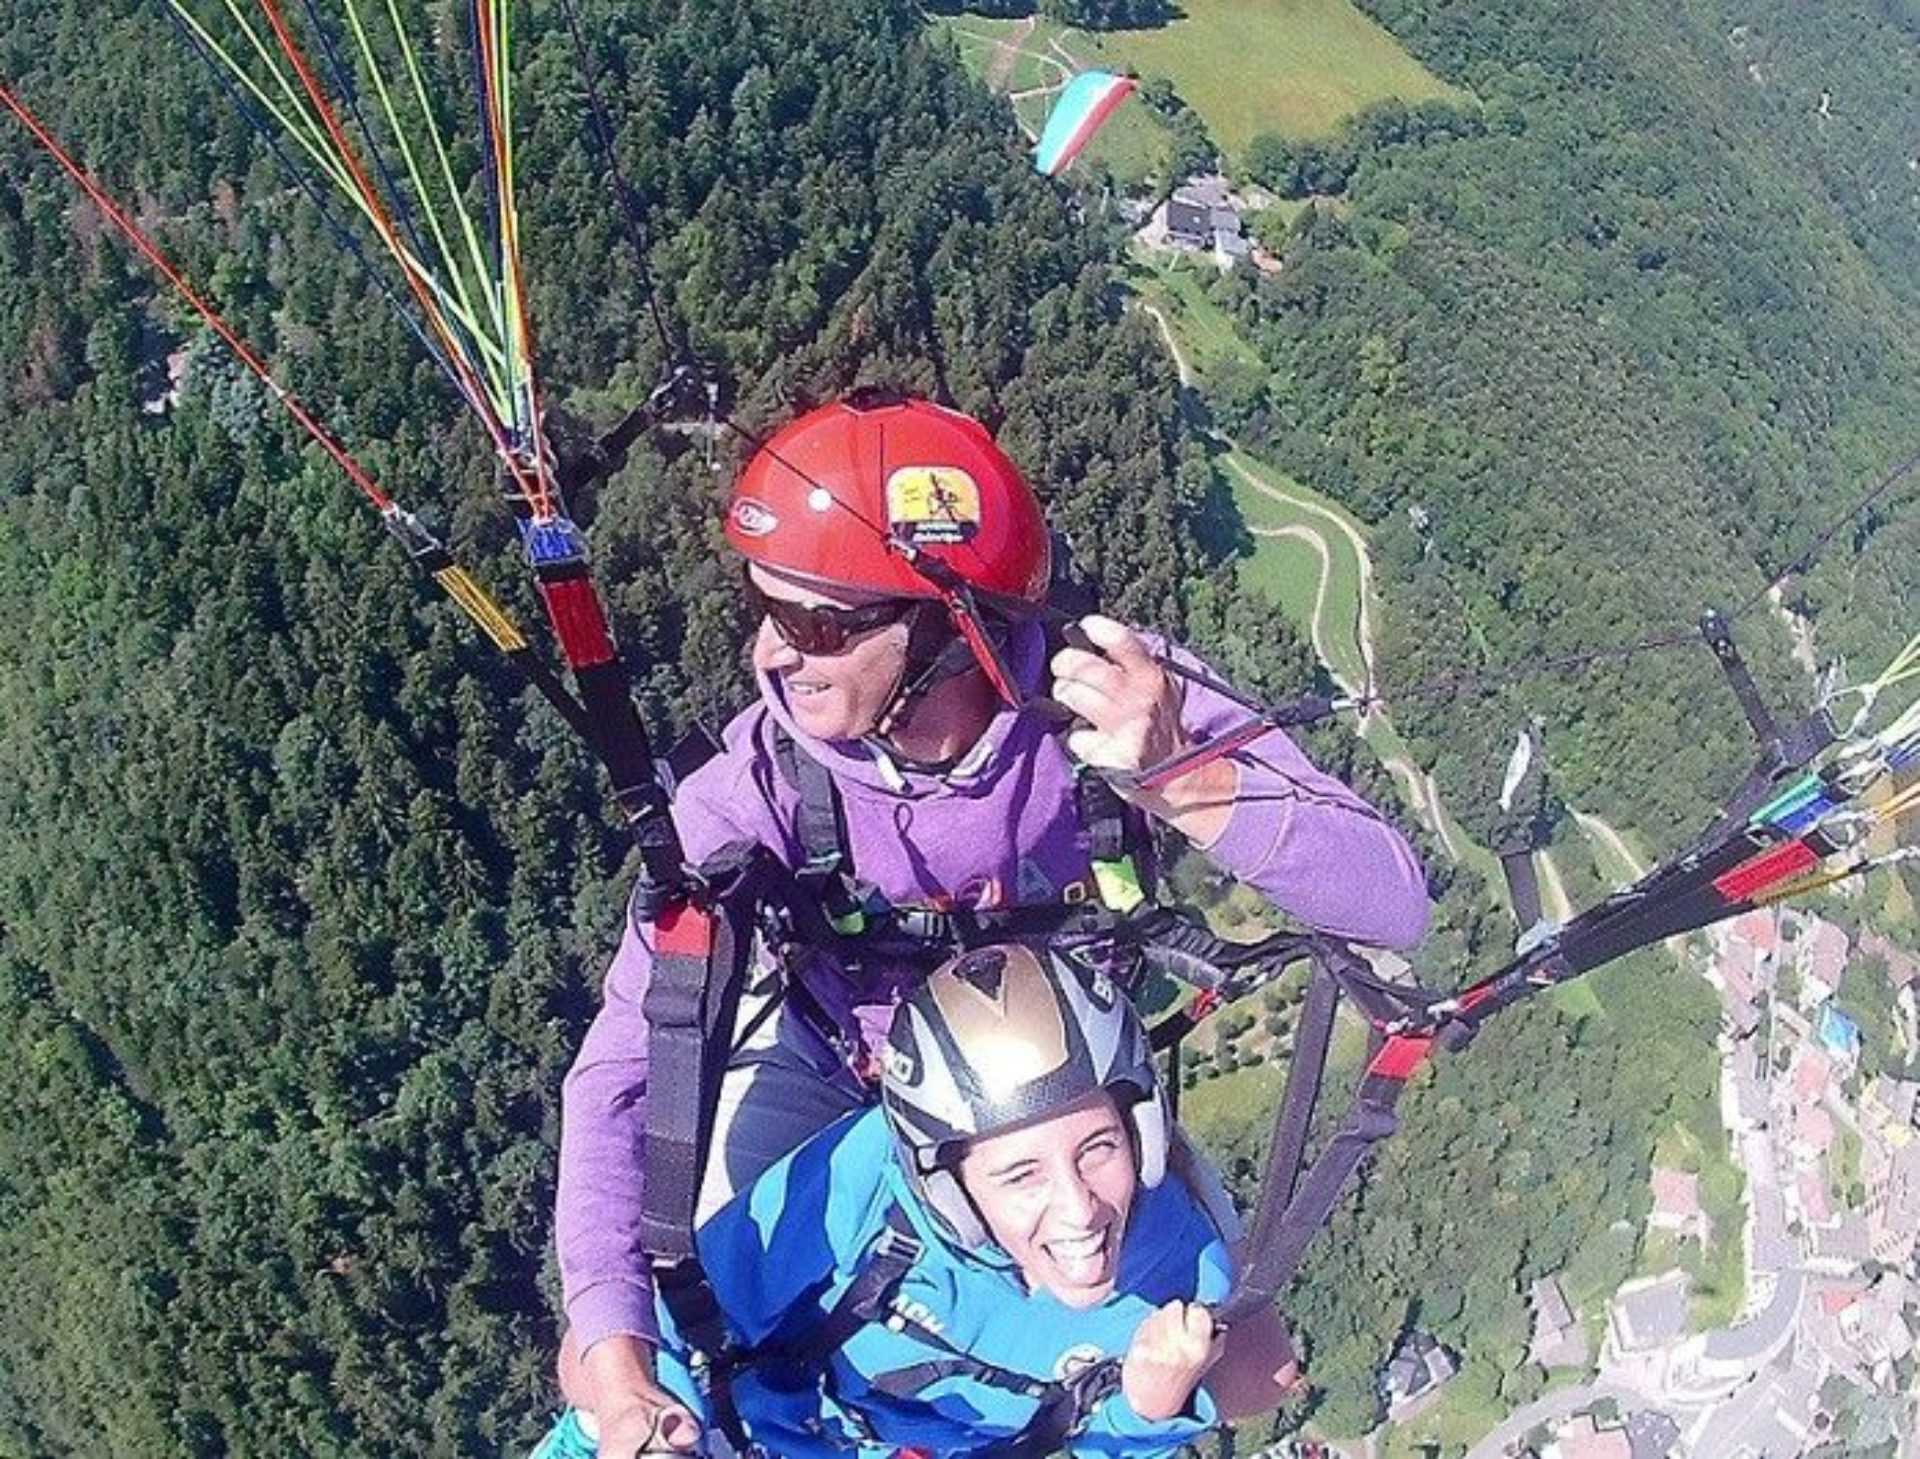 Paragliding Emilia-Romagna